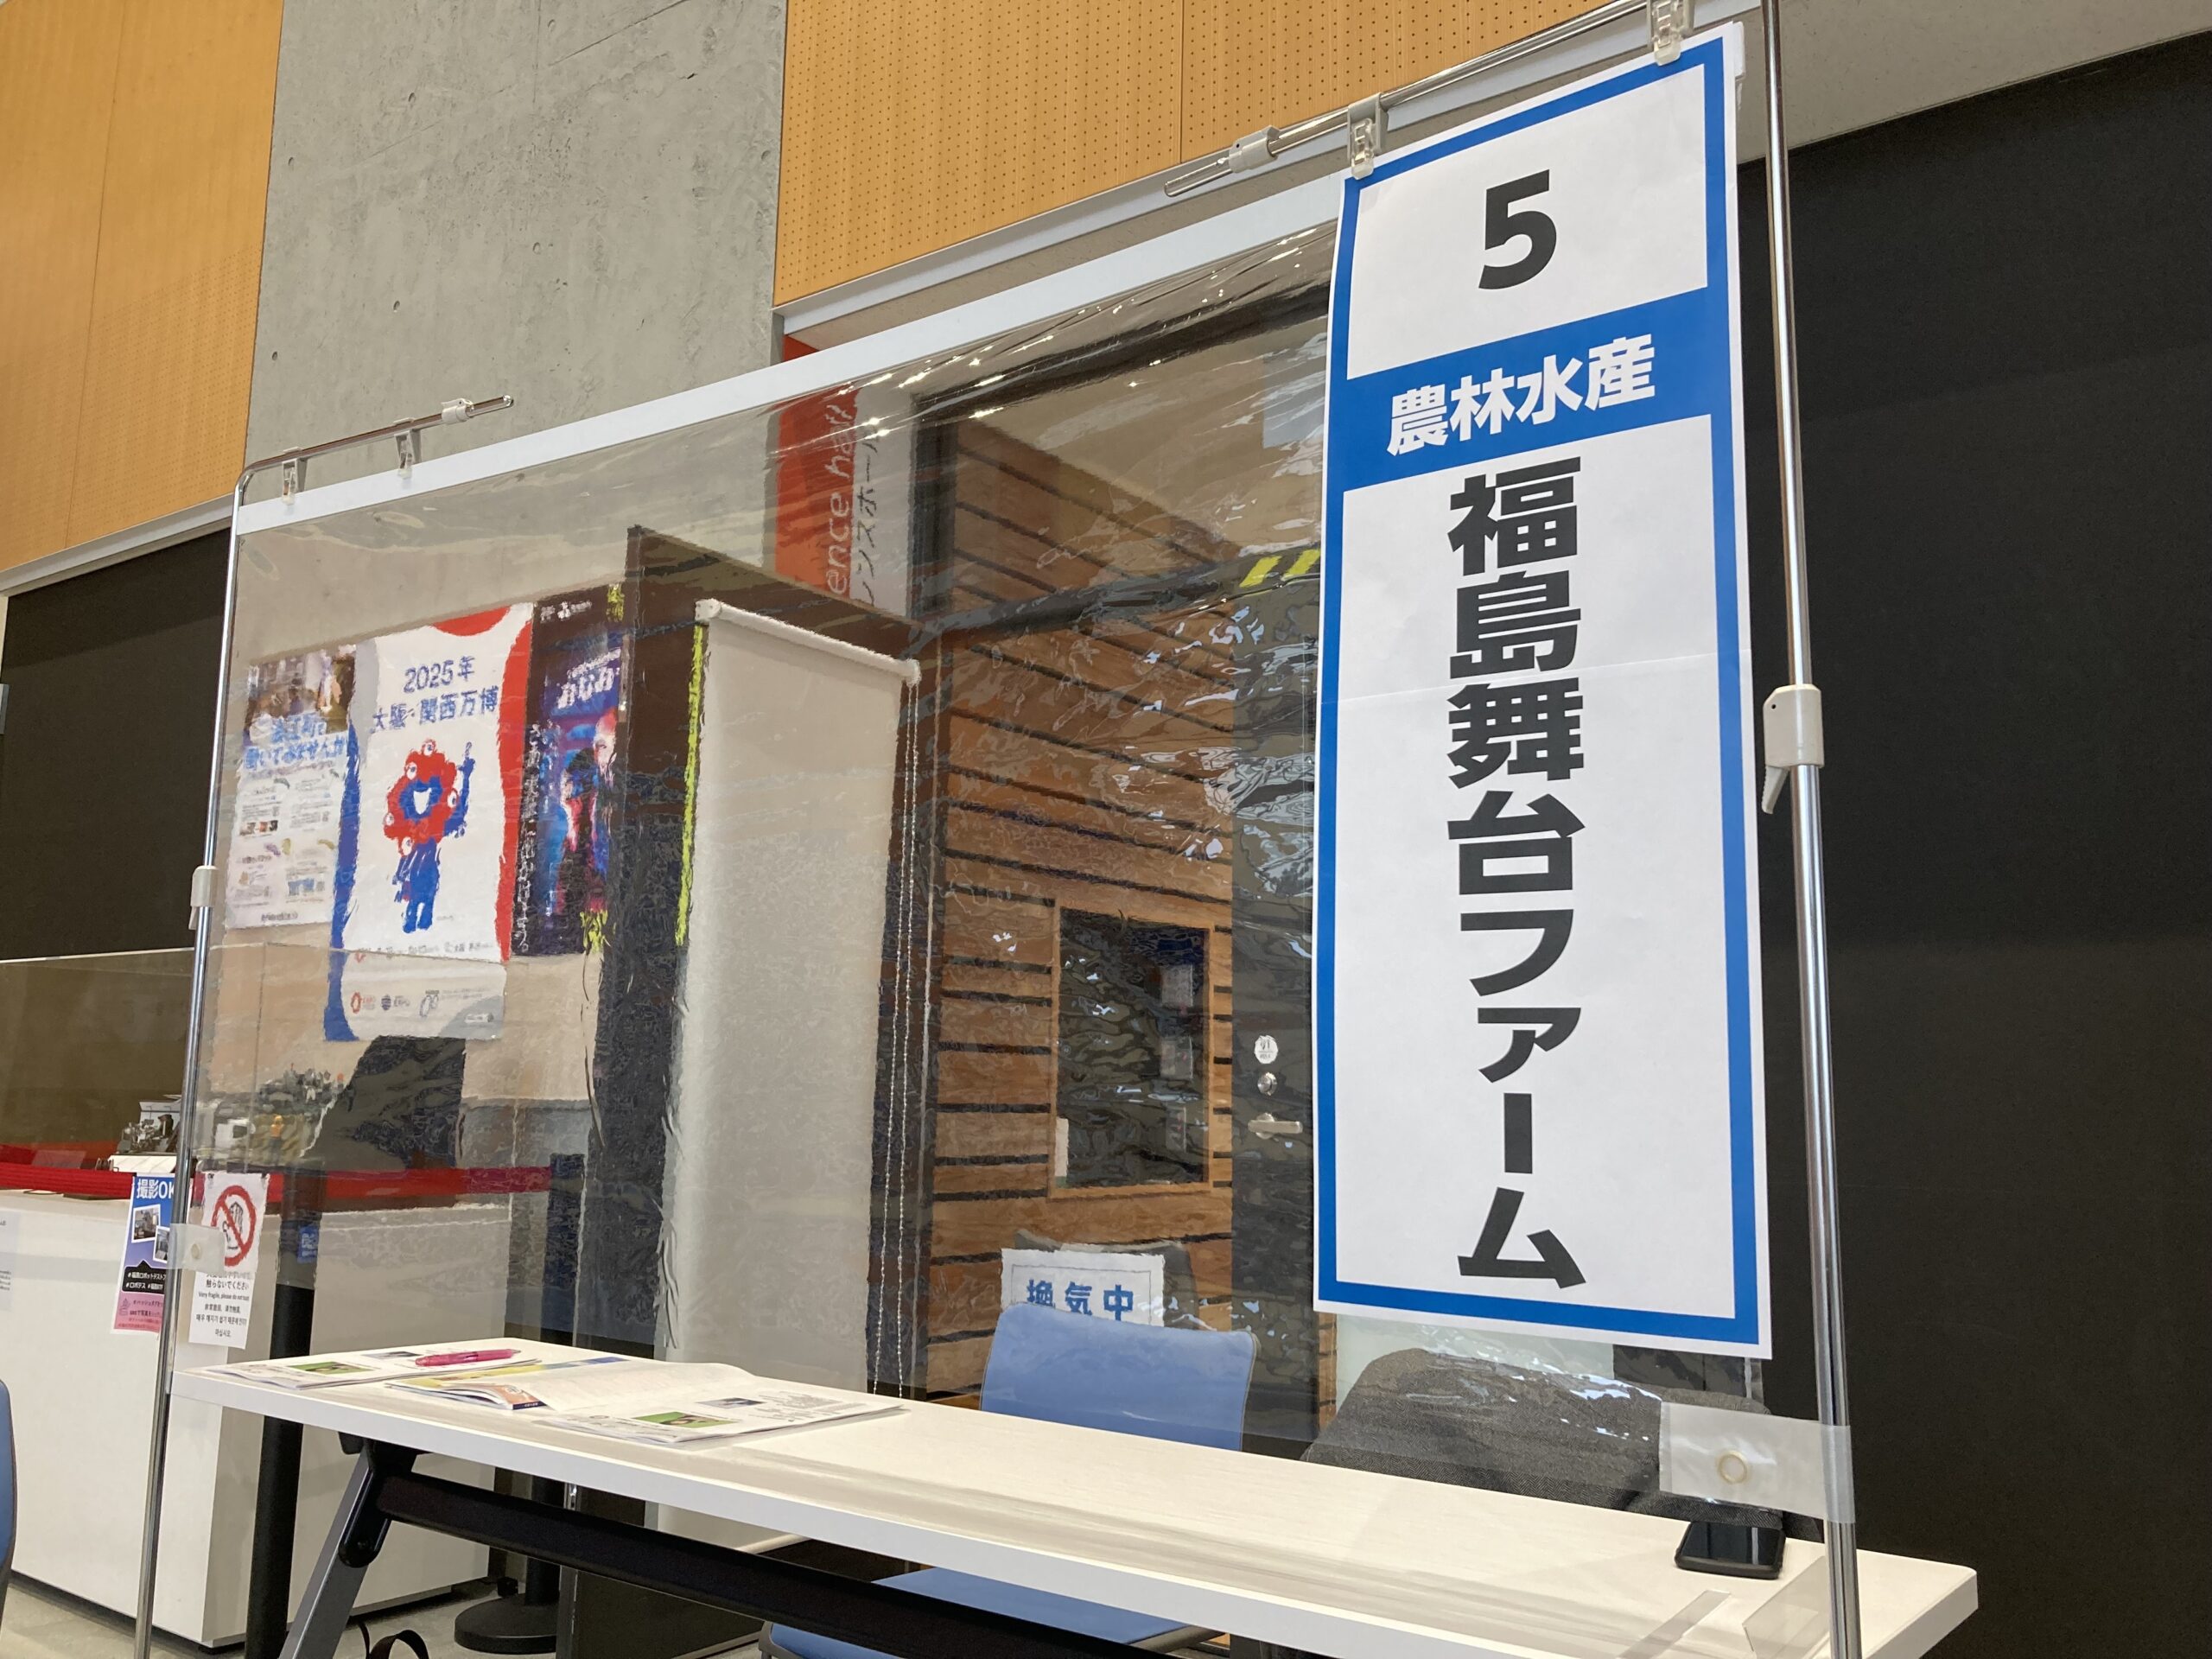 【就職セミナー】関連会社「福島舞台ファーム」が福島県南相馬市の就職ガイダンスに出展しました。